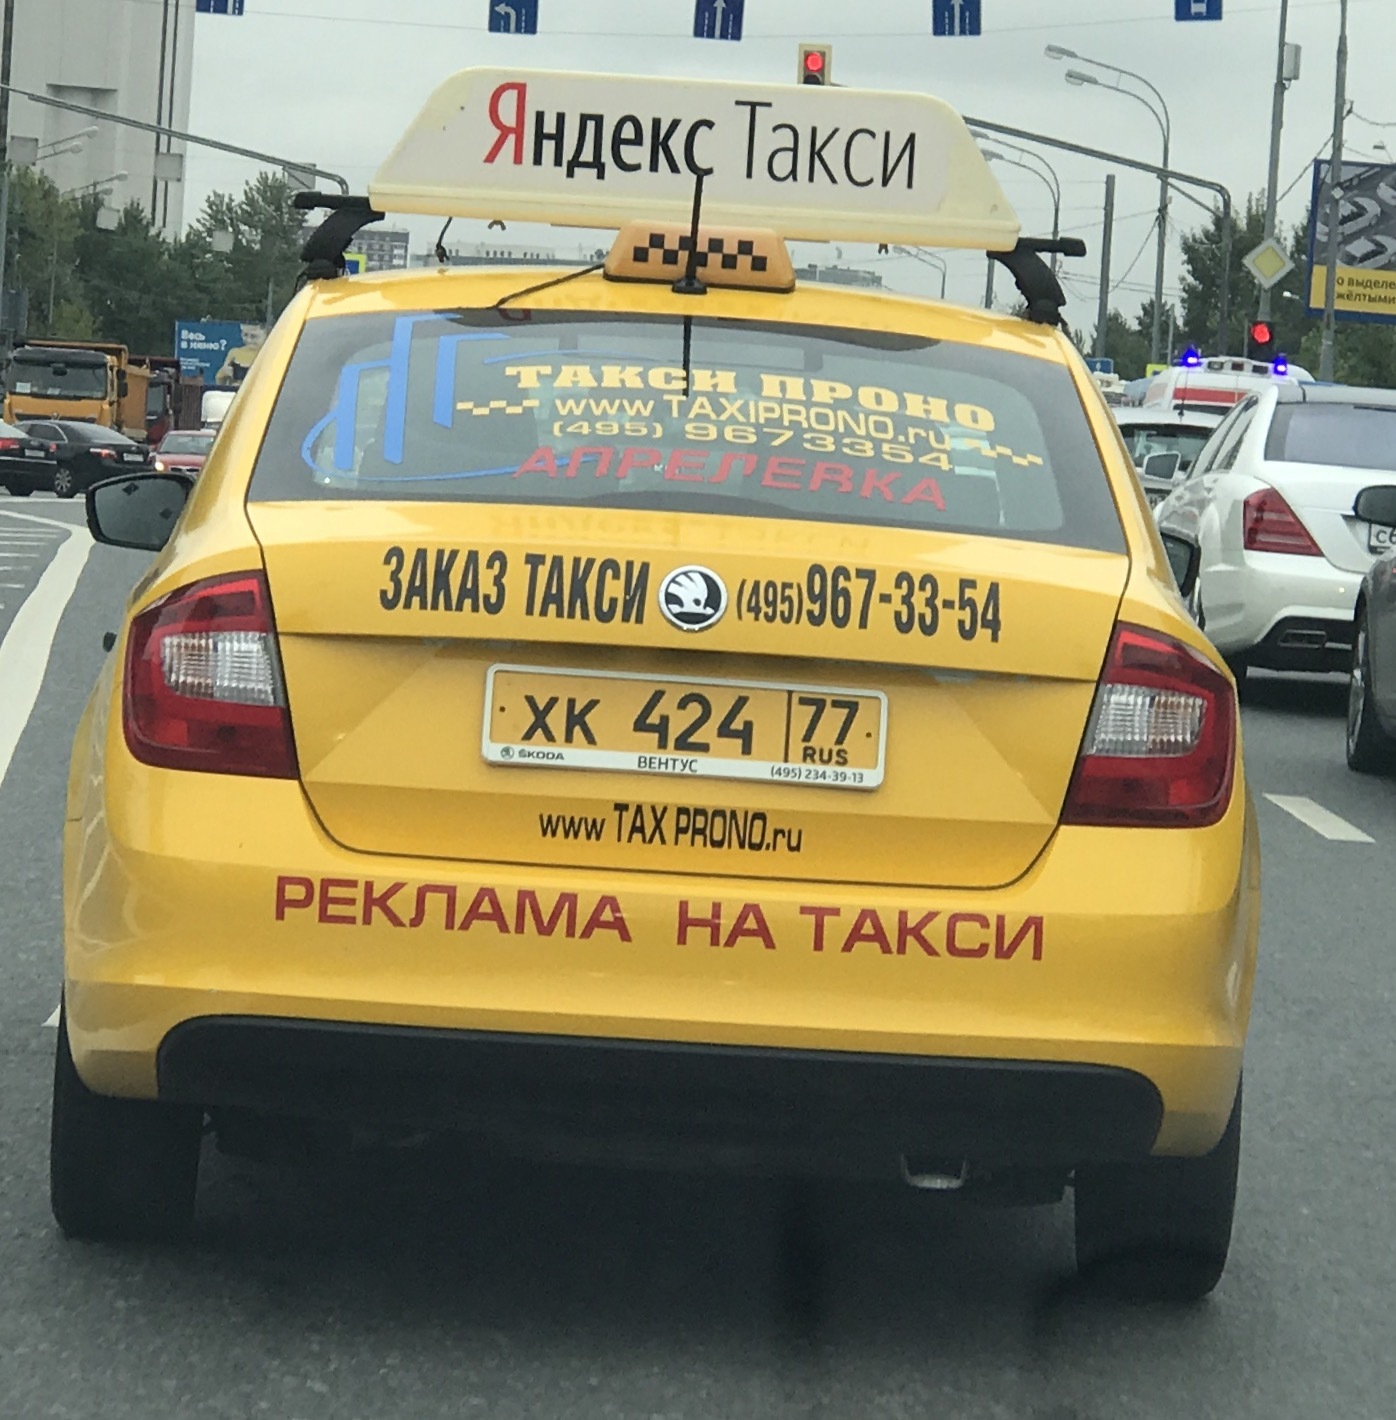 Имена водителей такси. Такси. Такси прикол. Надпись такси.